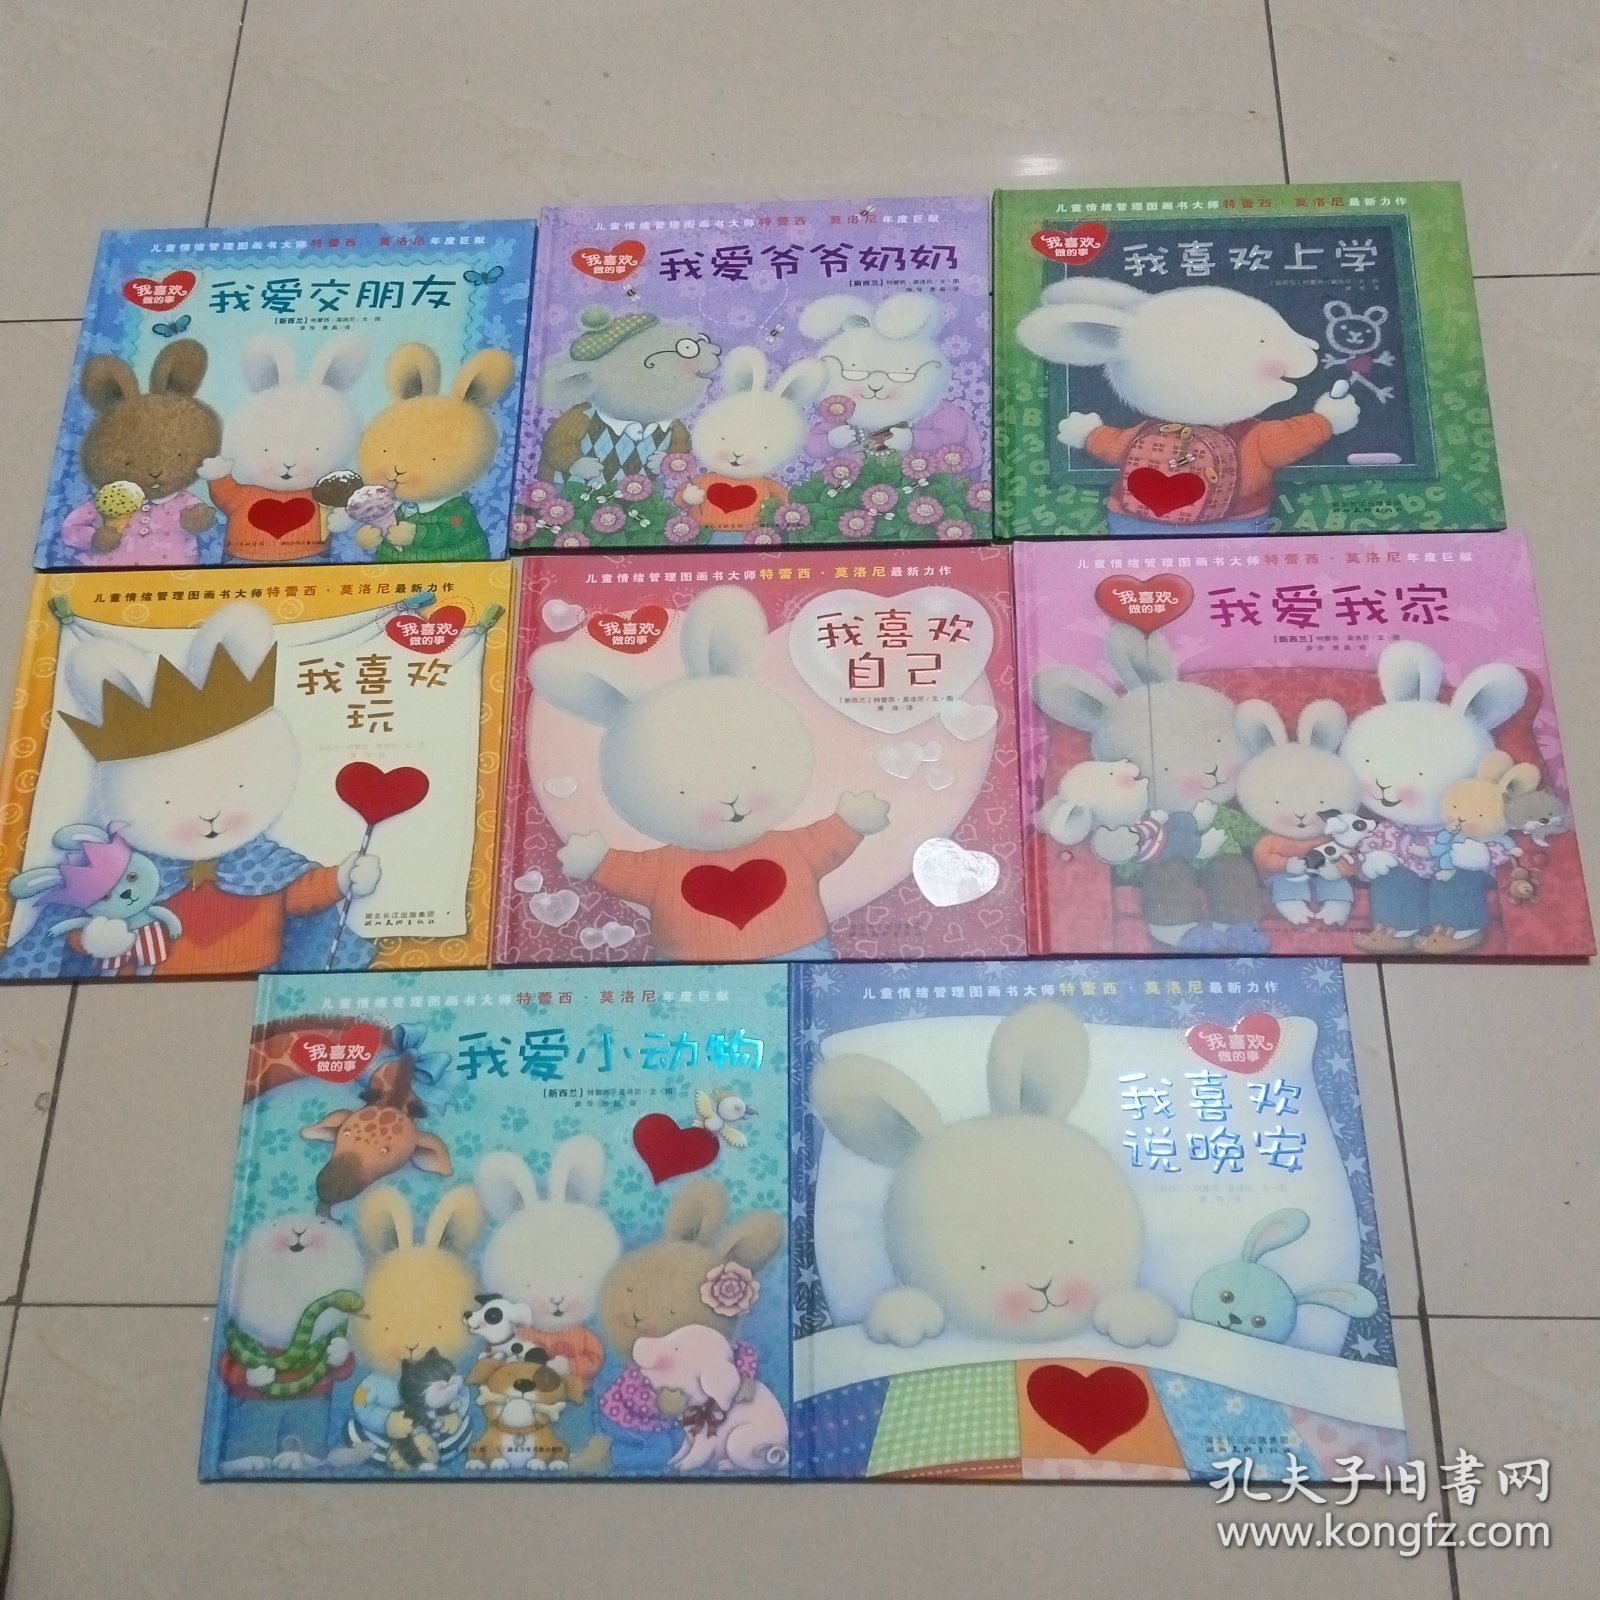 中国第一套儿童情绪管理图画书全集（典藏版）我喜欢做的事：我爱我家+我爱小动物+我爱交朋友+我爱爷爷奶奶+我喜欢自己+我喜欢说晚安+我喜欢上学+我喜欢玩 8册合售 精装正版